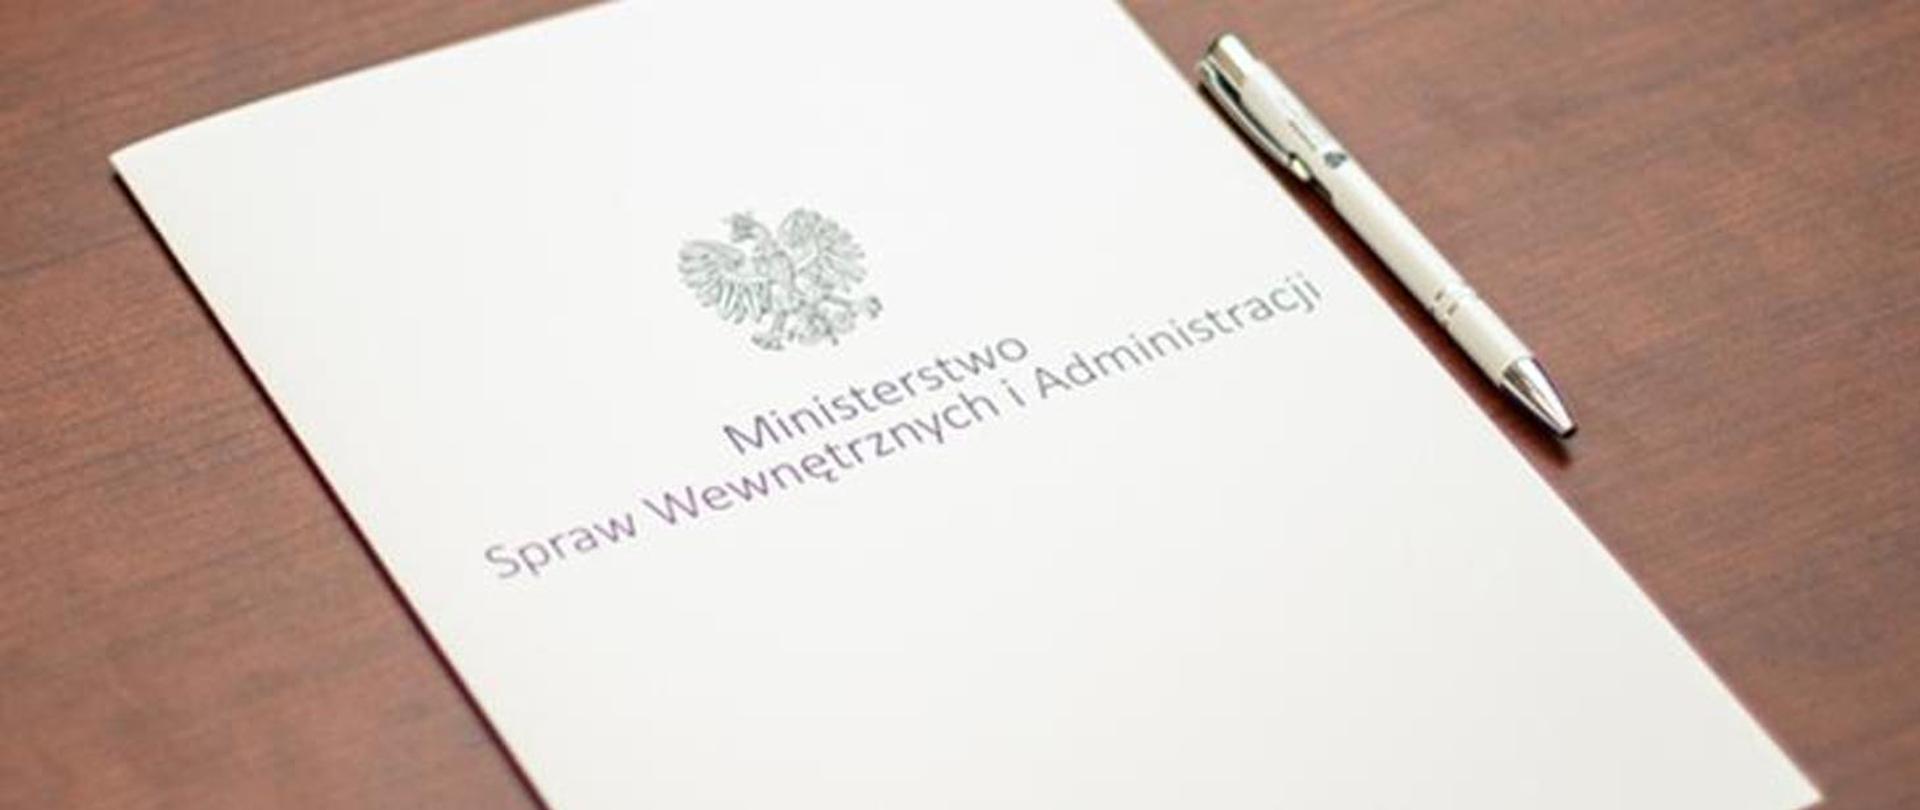 Zdjęcie białej teczki z godłem oraz napisem Ministerstwo Spraw Wewnętrznych i Administracji. Po prawej stronie od teczki leży biały długopis